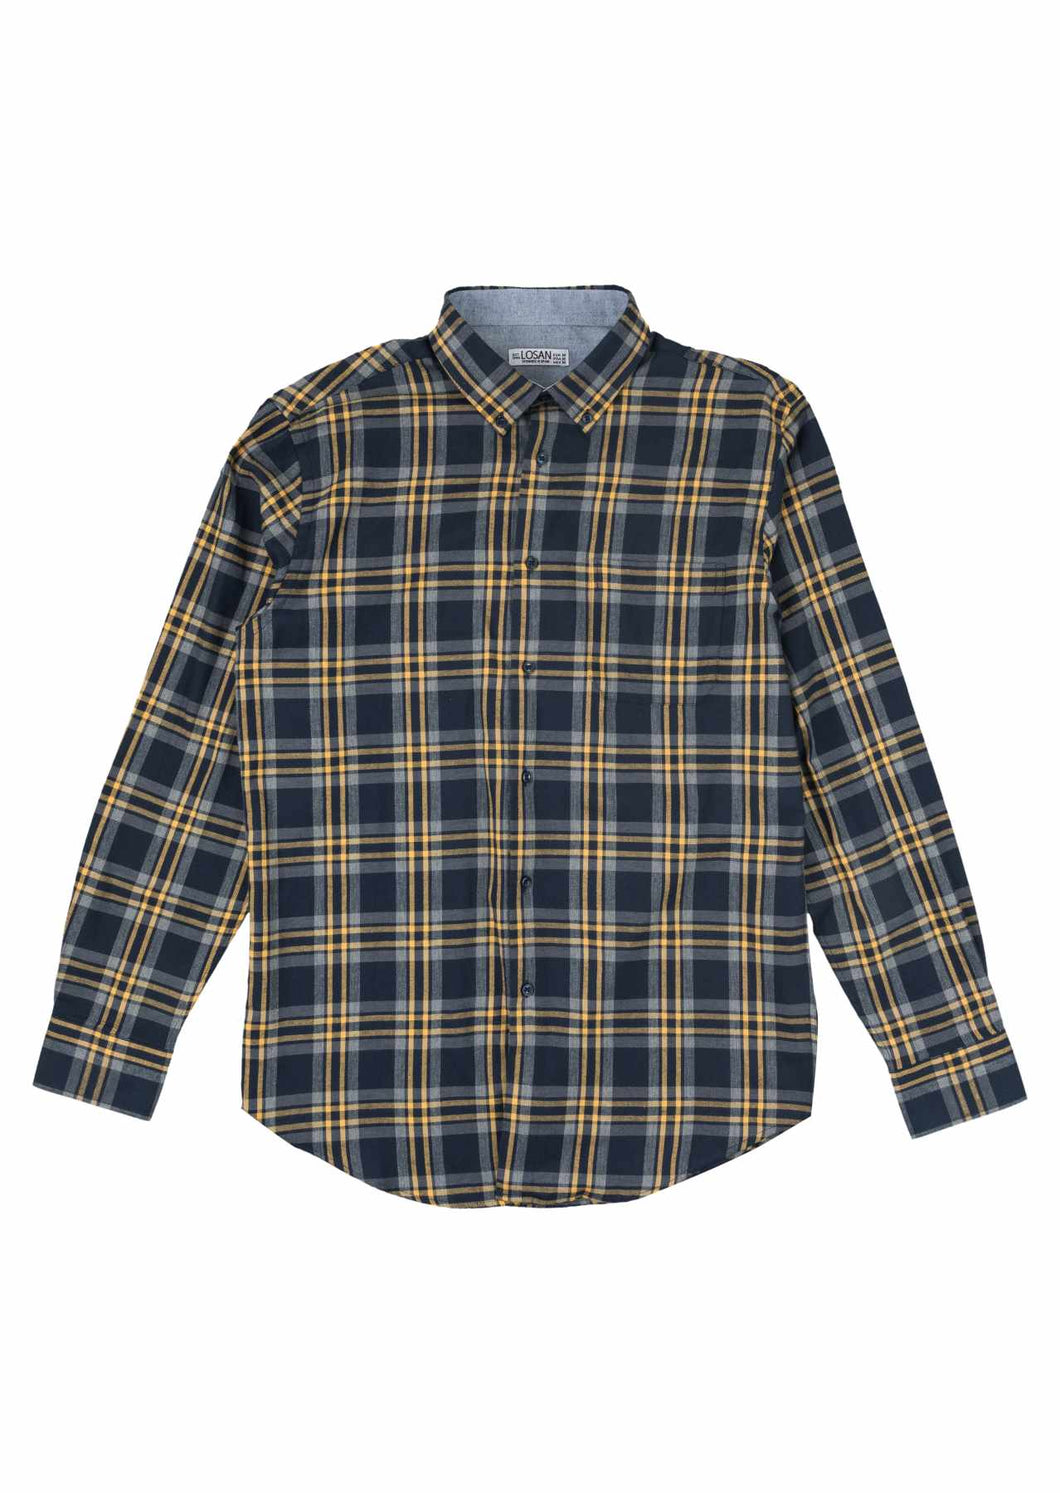 Losan Men's Shirt - Style 2213335AL